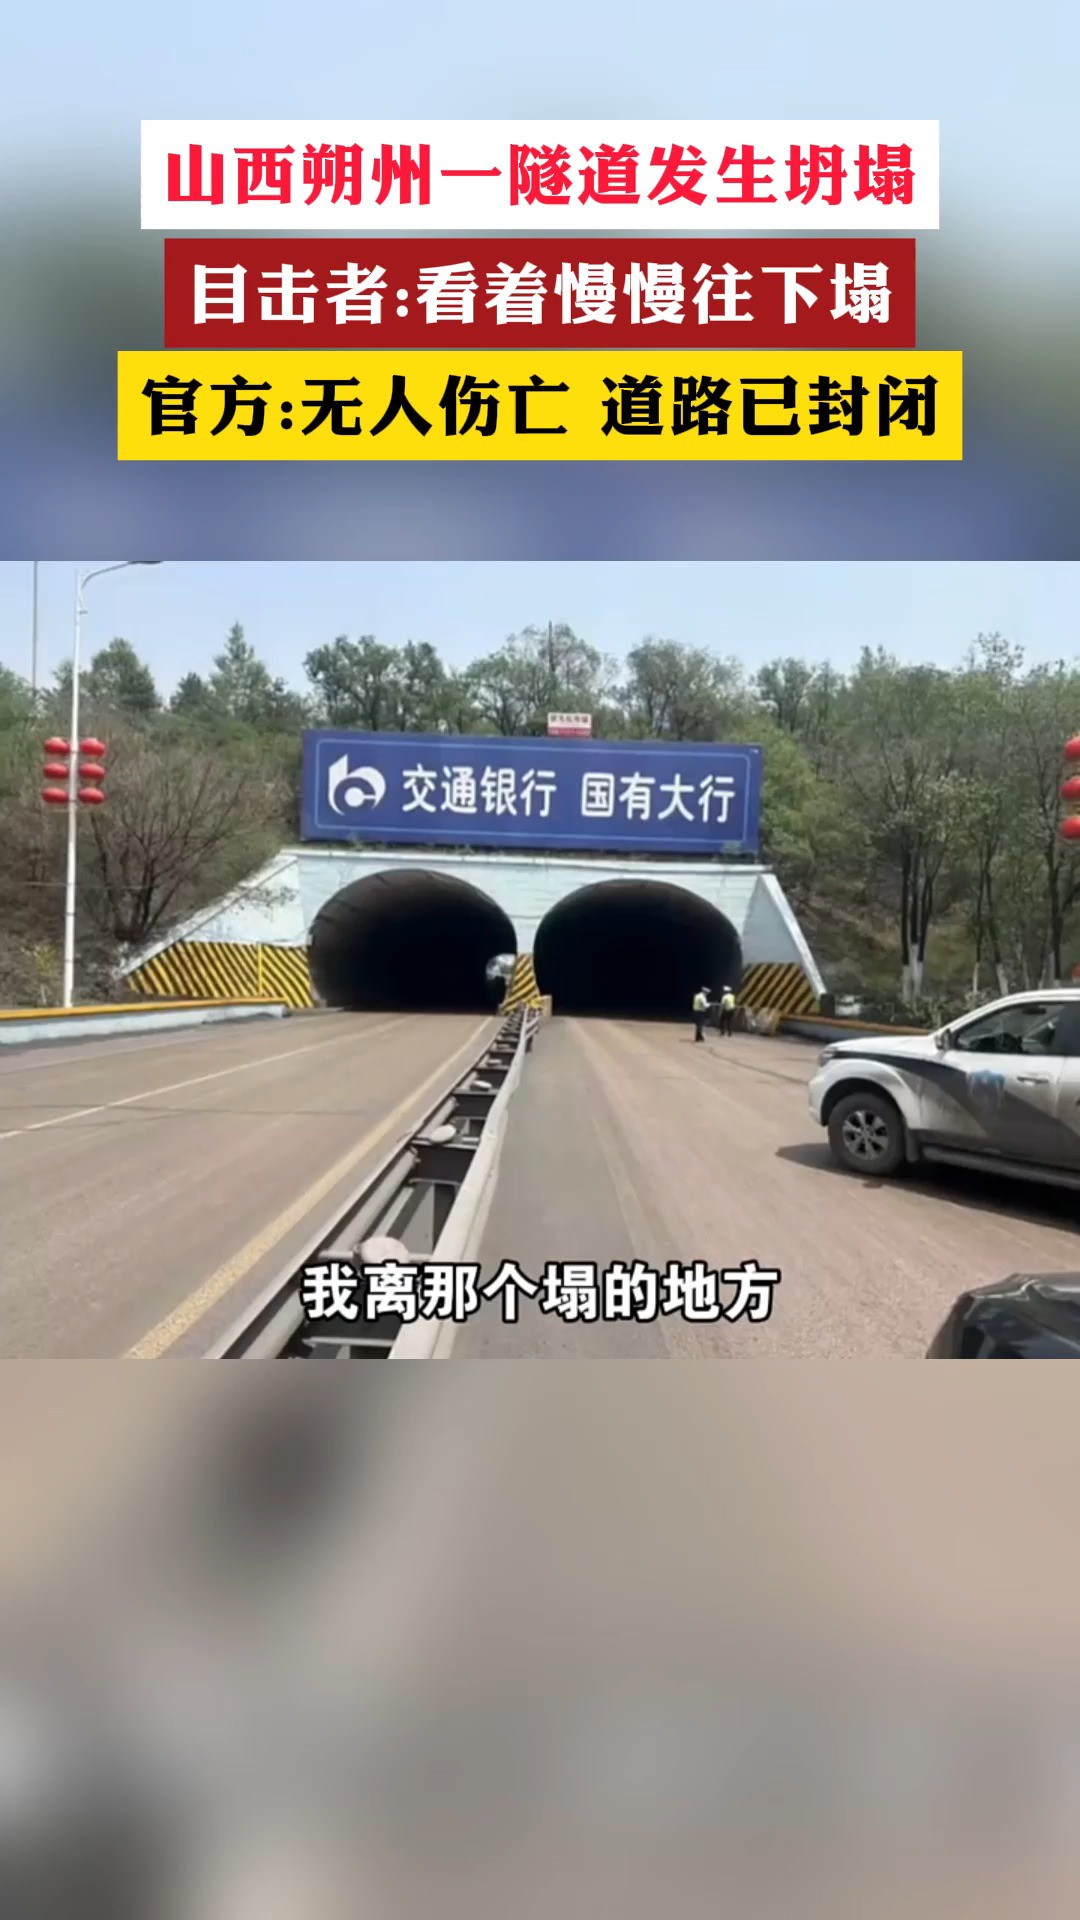 山西朔州一隧道发生坍塌
目击者:看着慢慢往下塌